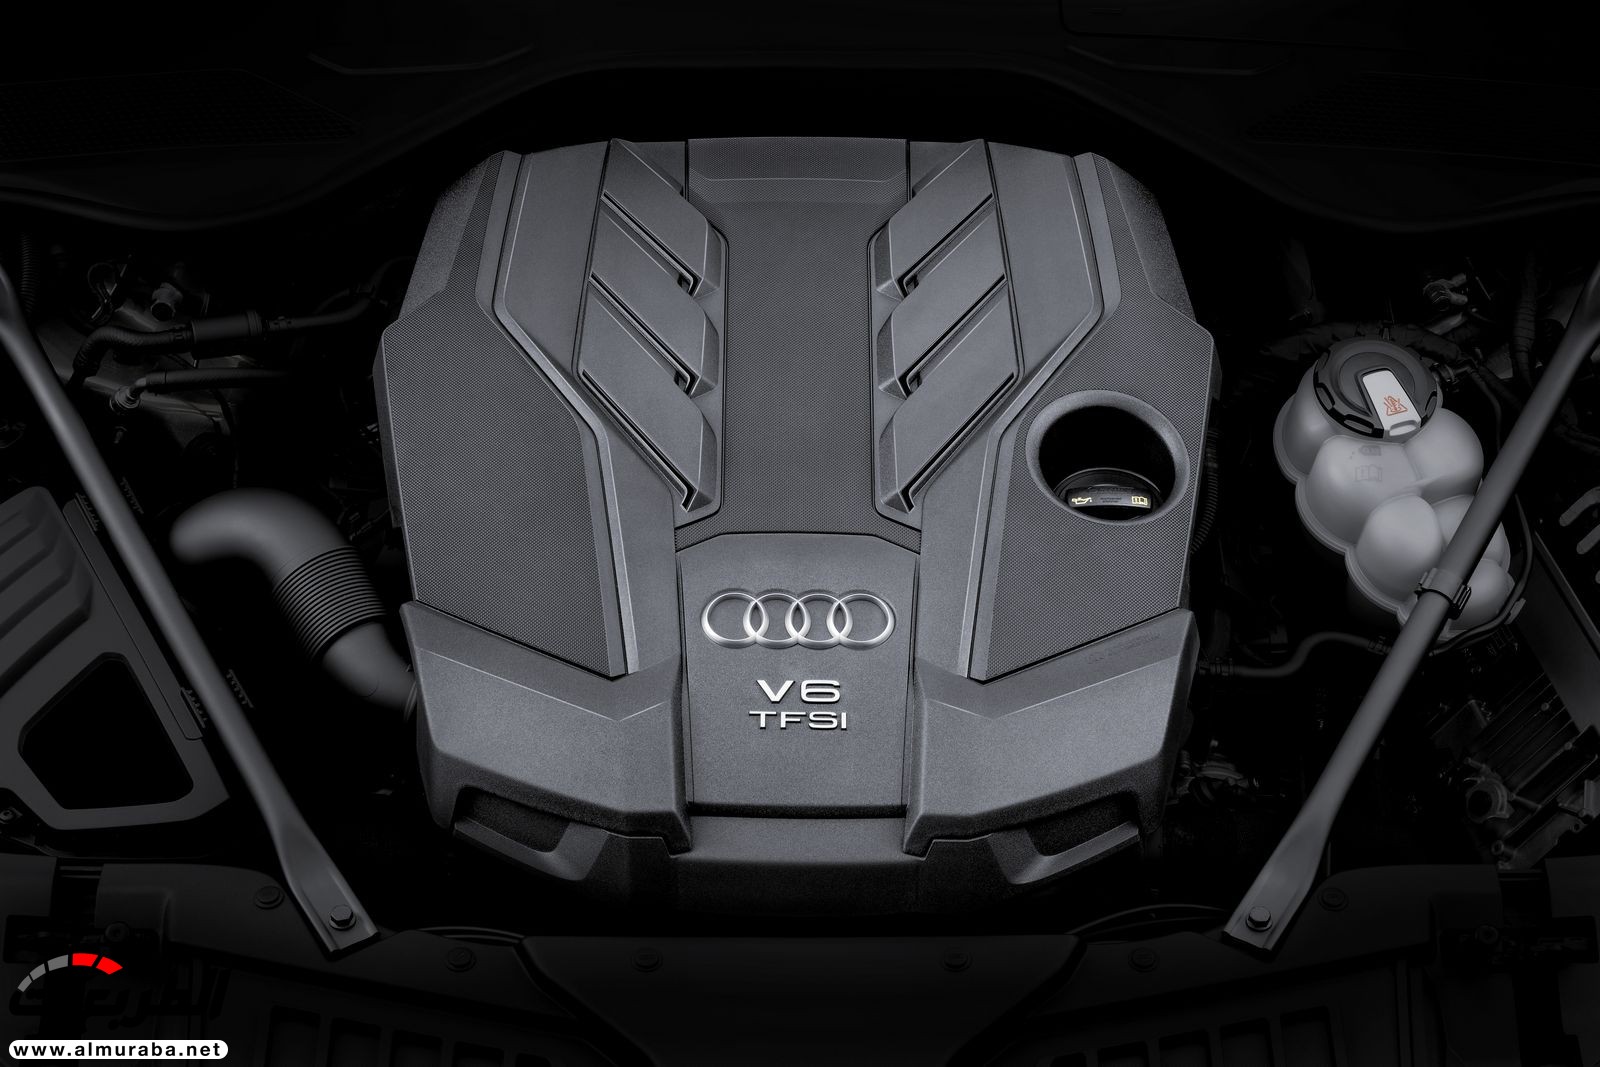 أودي A8 2018 الجديدة كلياً تكشف نفسها بتصميم وتقنيات متطورة "معلومات + 100 صورة" Audi A8 37